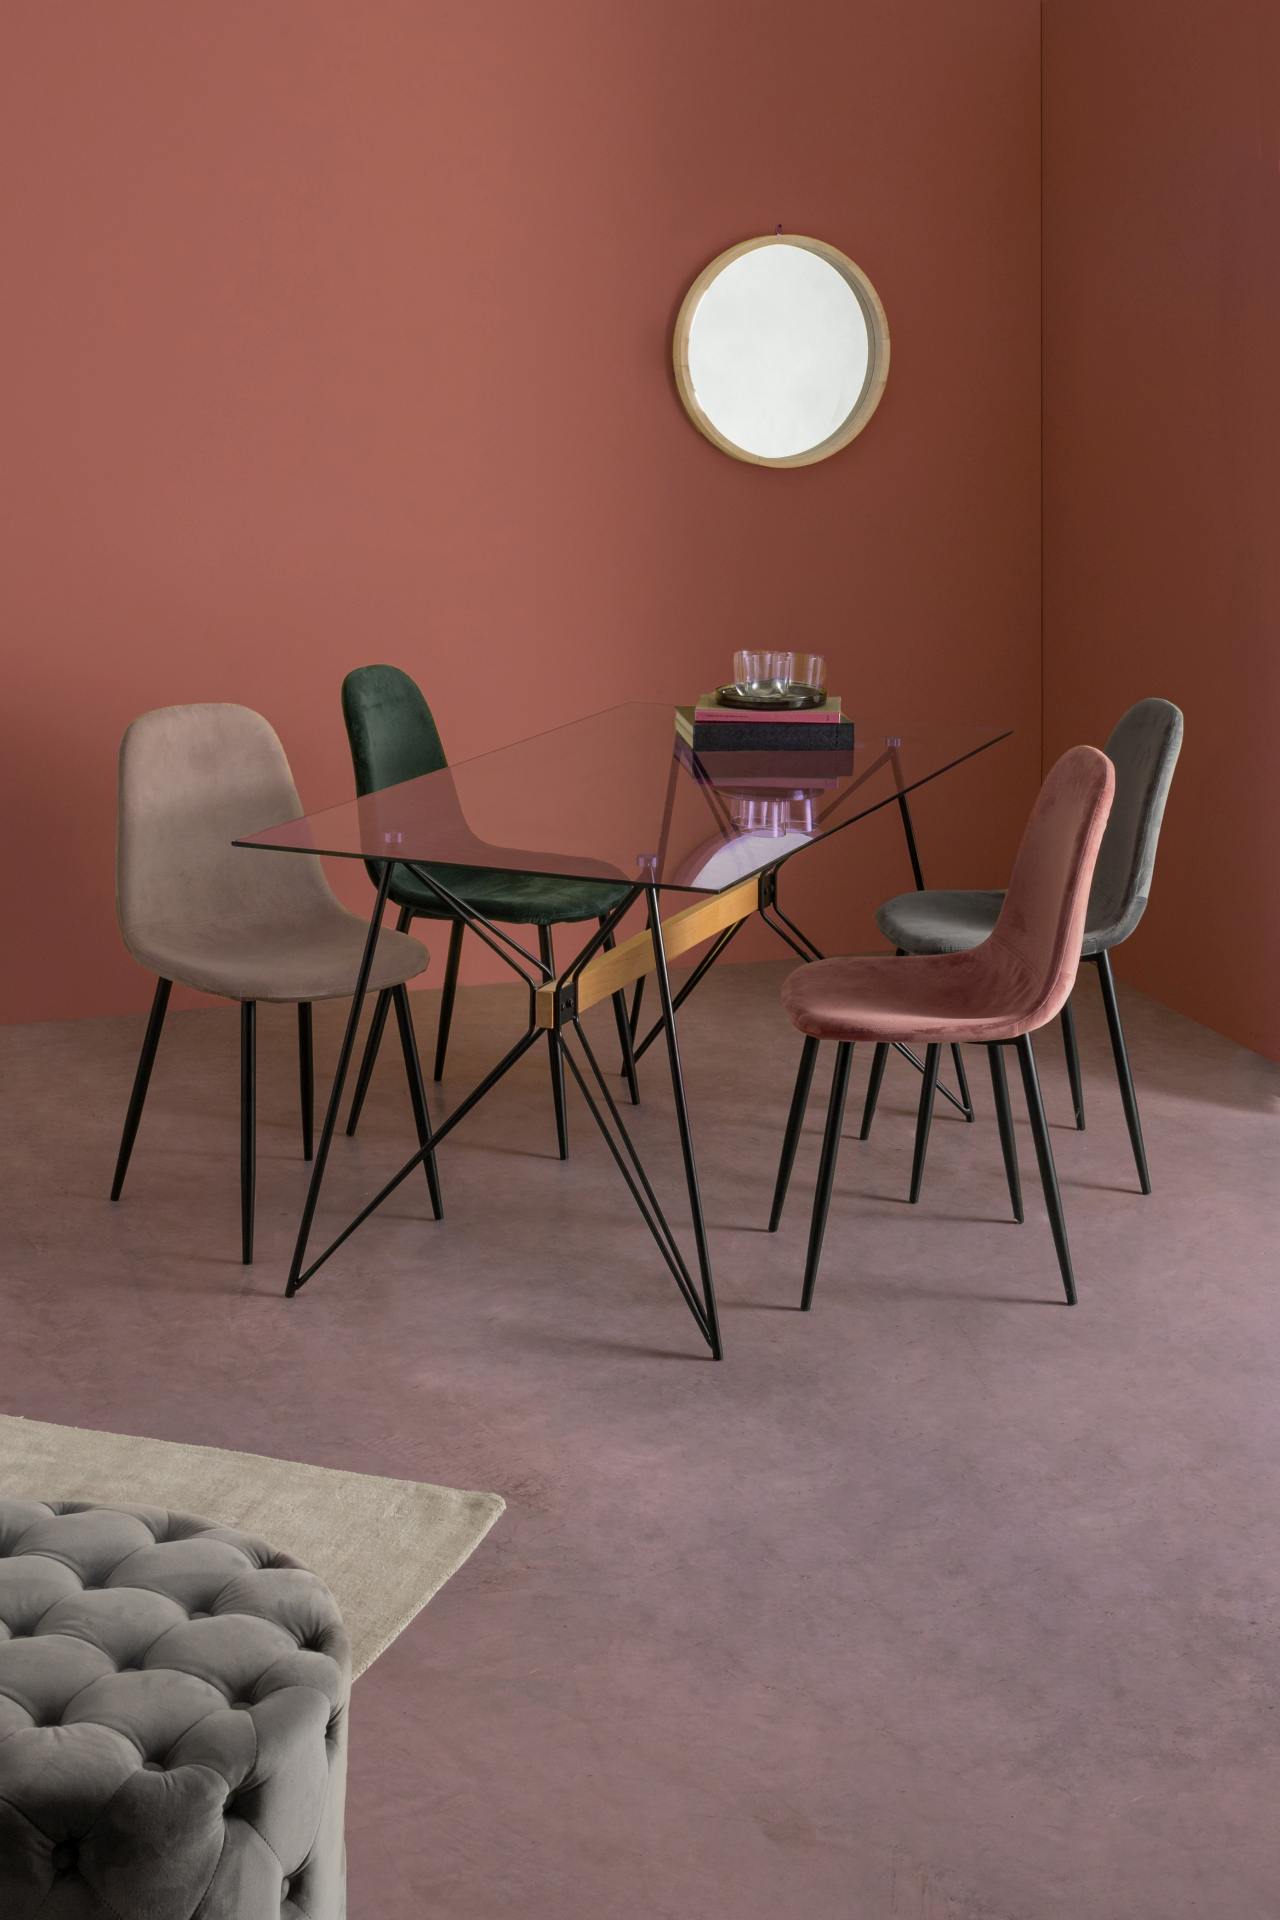 Der Esszimmerstuhl Irelia überzeugt mit seinem modernem Design. Gefertigt wurde der Stuhl aus einem Samt-Bezug, welcher einen Taupe Farbton besitzt. Das Gestell ist aus Metall und ist schwarz. Die Sitzhöhe beträgt 47 cm.